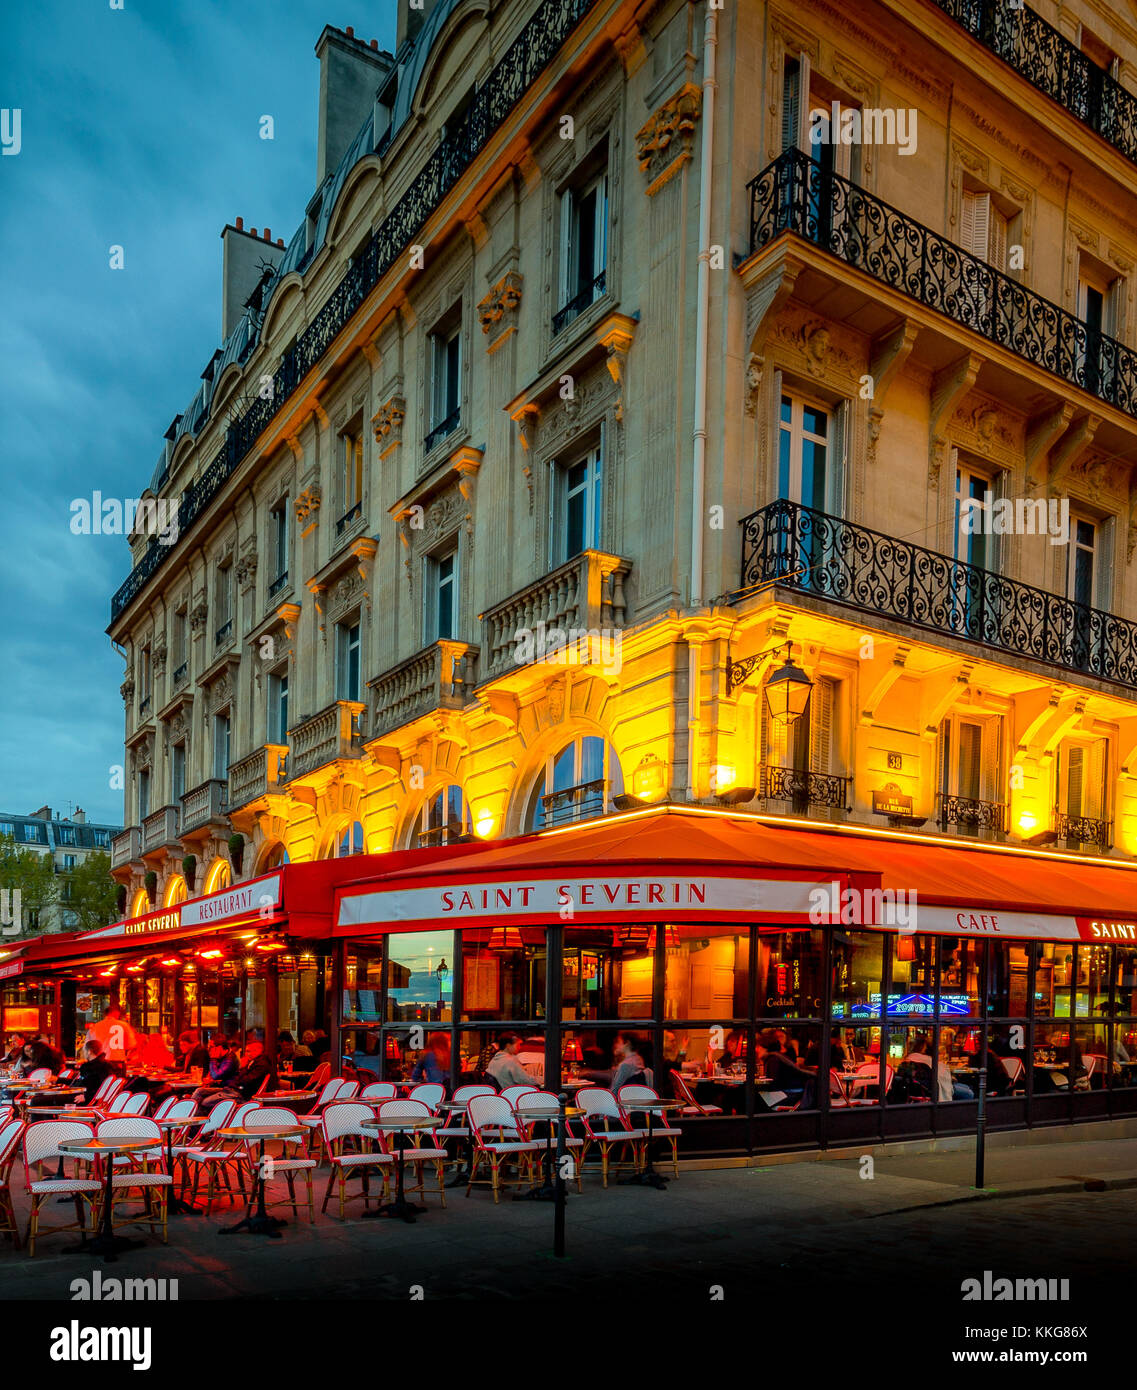 Paris Cafe Notre Dame Stock Photos & Paris Cafe Notre Dame Stock Images ...